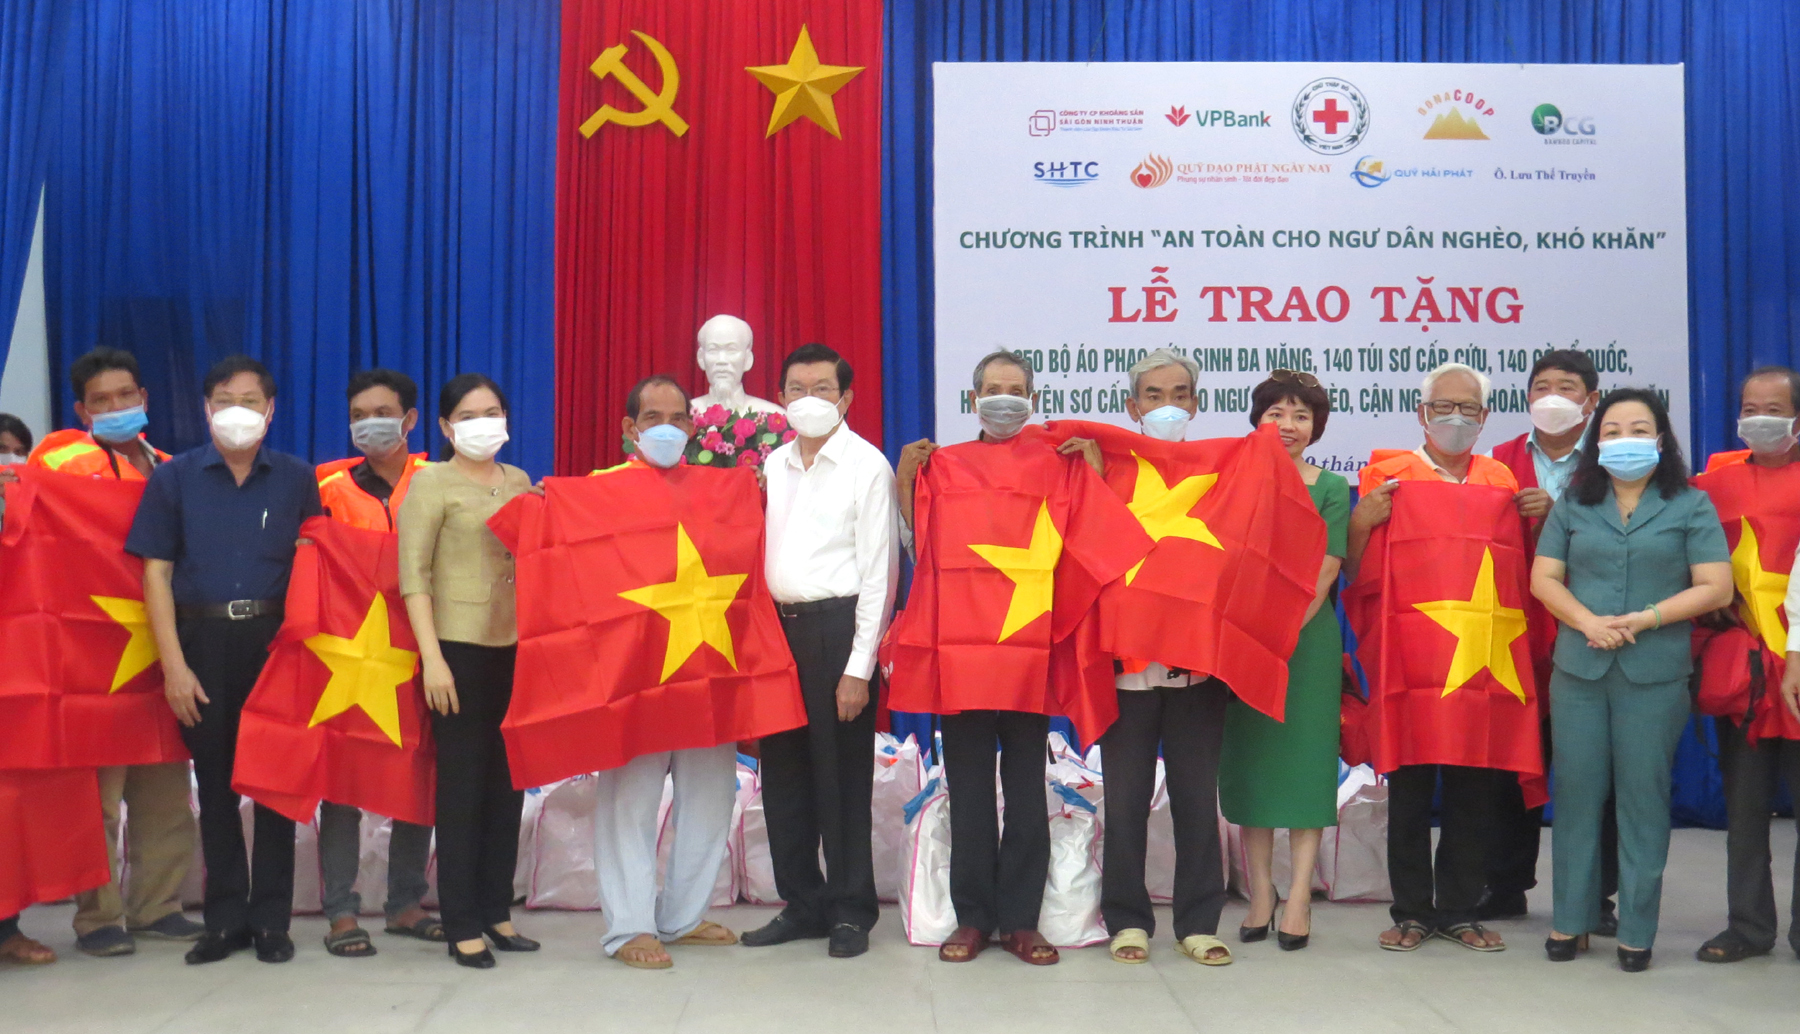 Nguyên Chủ tịch nước Trương Tấn Sang cùng lãnh đạo tỉnh Phú Yên và nhà tài trợ tặng bộ áo phao cứu sinh đa năng cho các ngư dân.